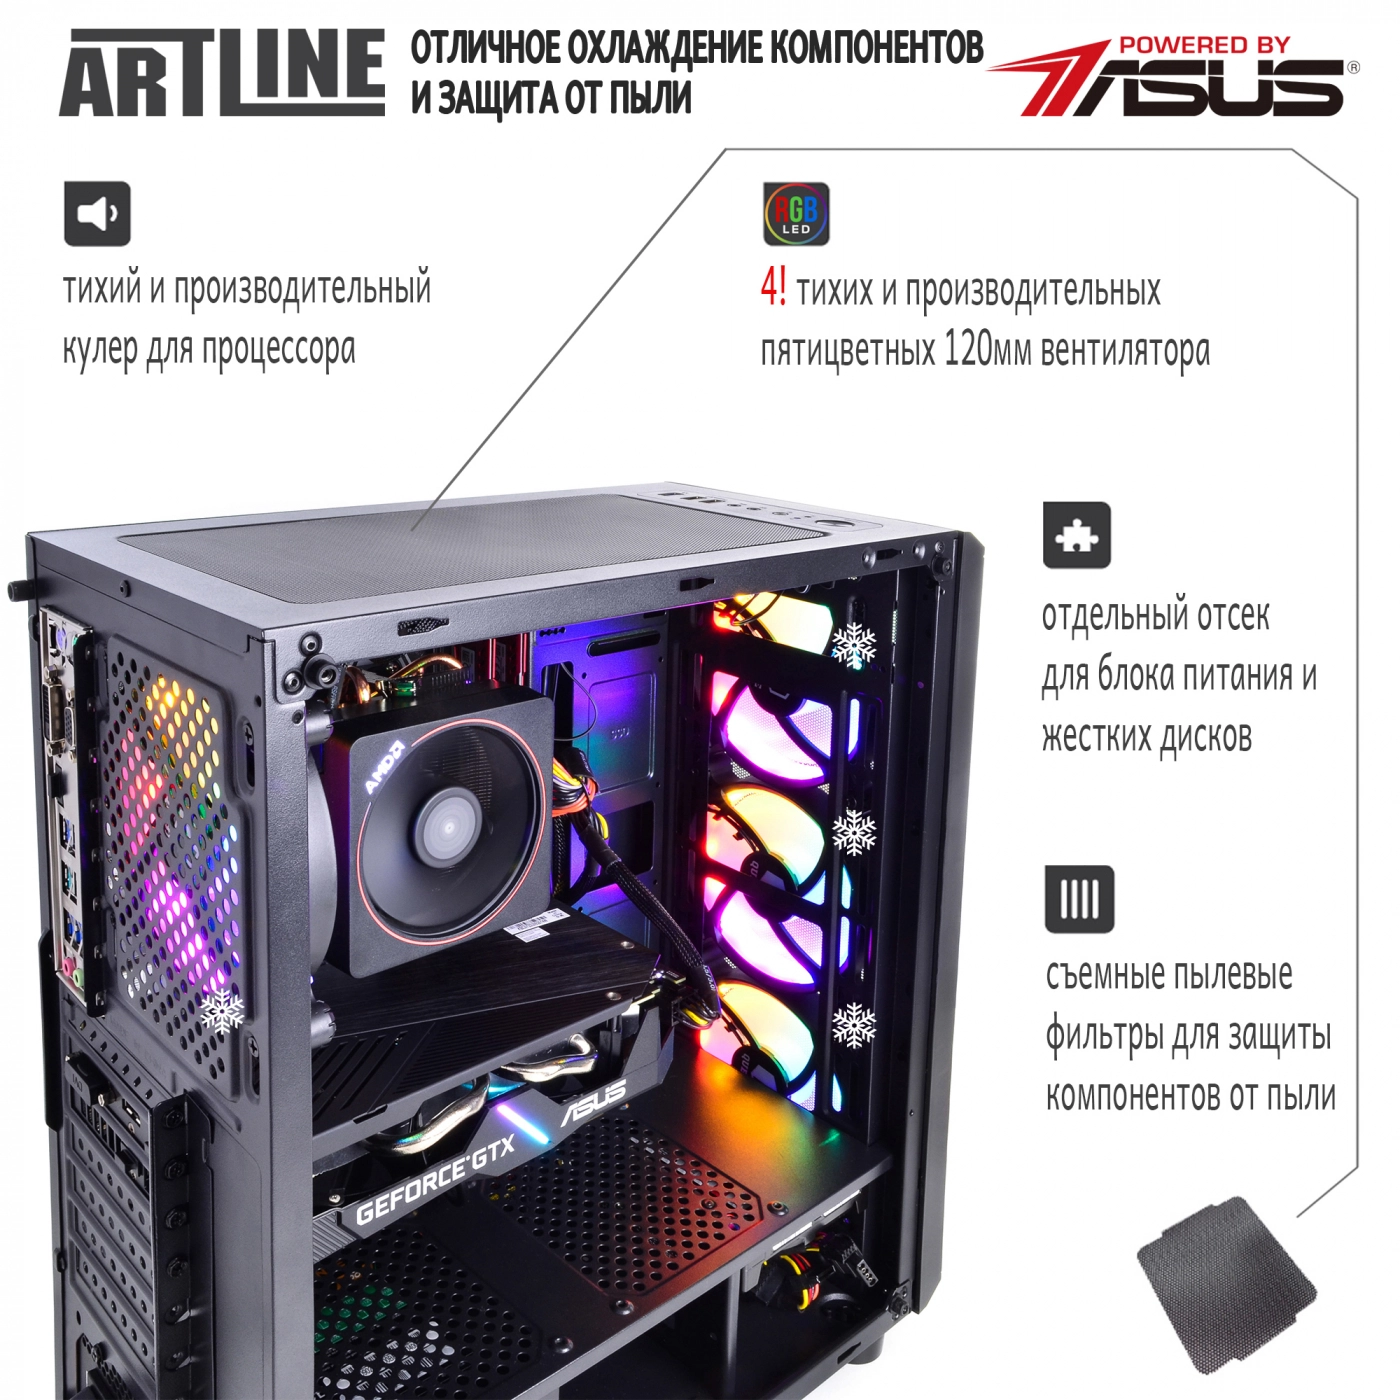 Купить Компьютер ARTLINE Gaming X68v02 - фото 3